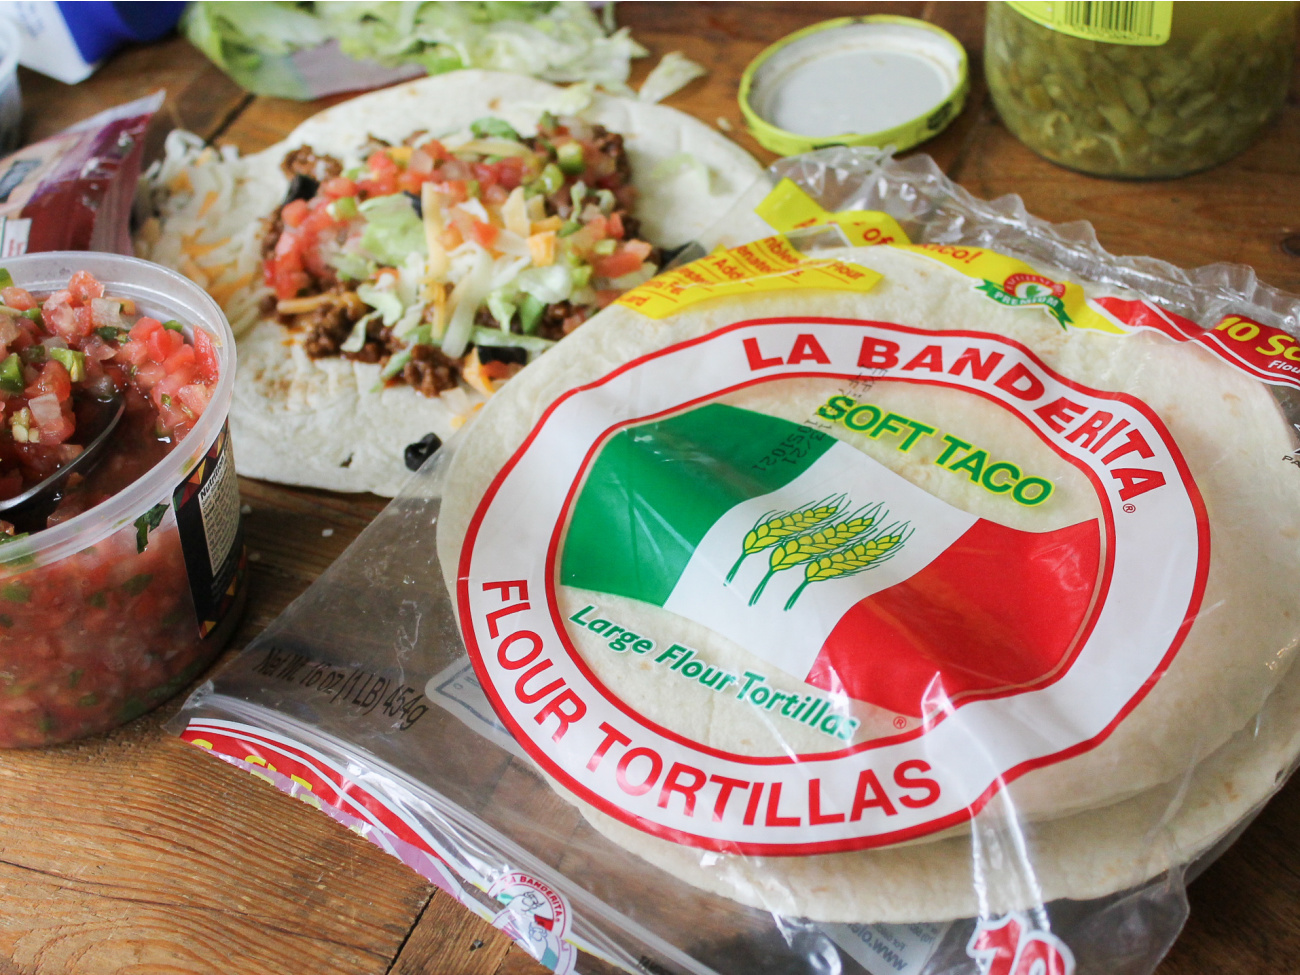 La Banderita Tortillas Only $1 At Kroger